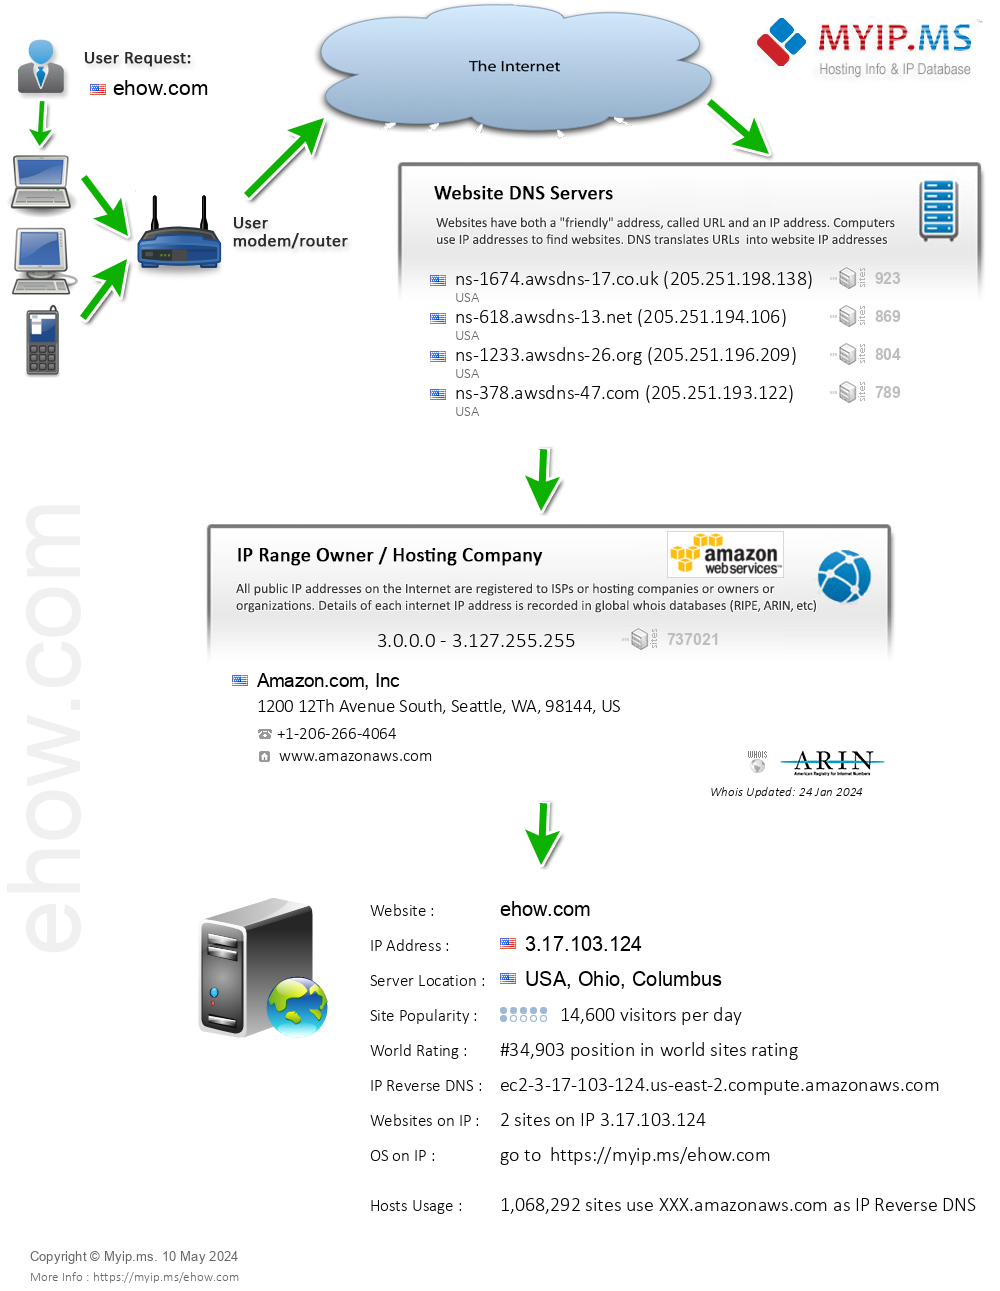 Ehow.com - Website Hosting Visual IP Diagram